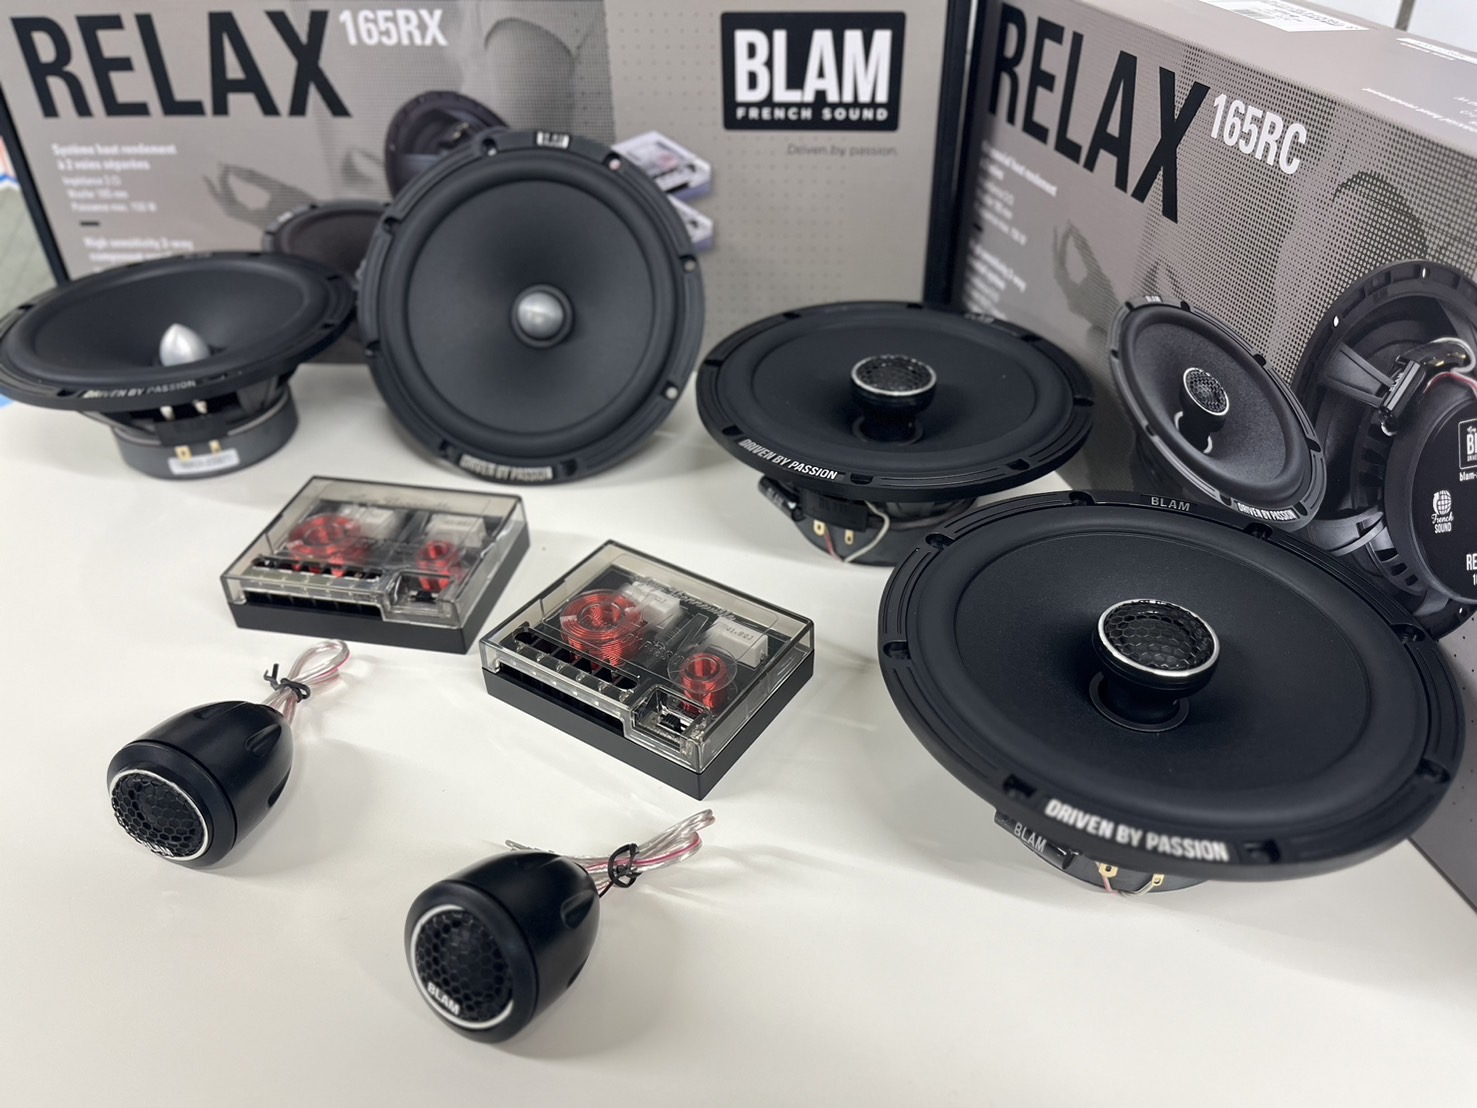 ブラム BLAM RELAX System 165RS スピーカー - カーオーディオ